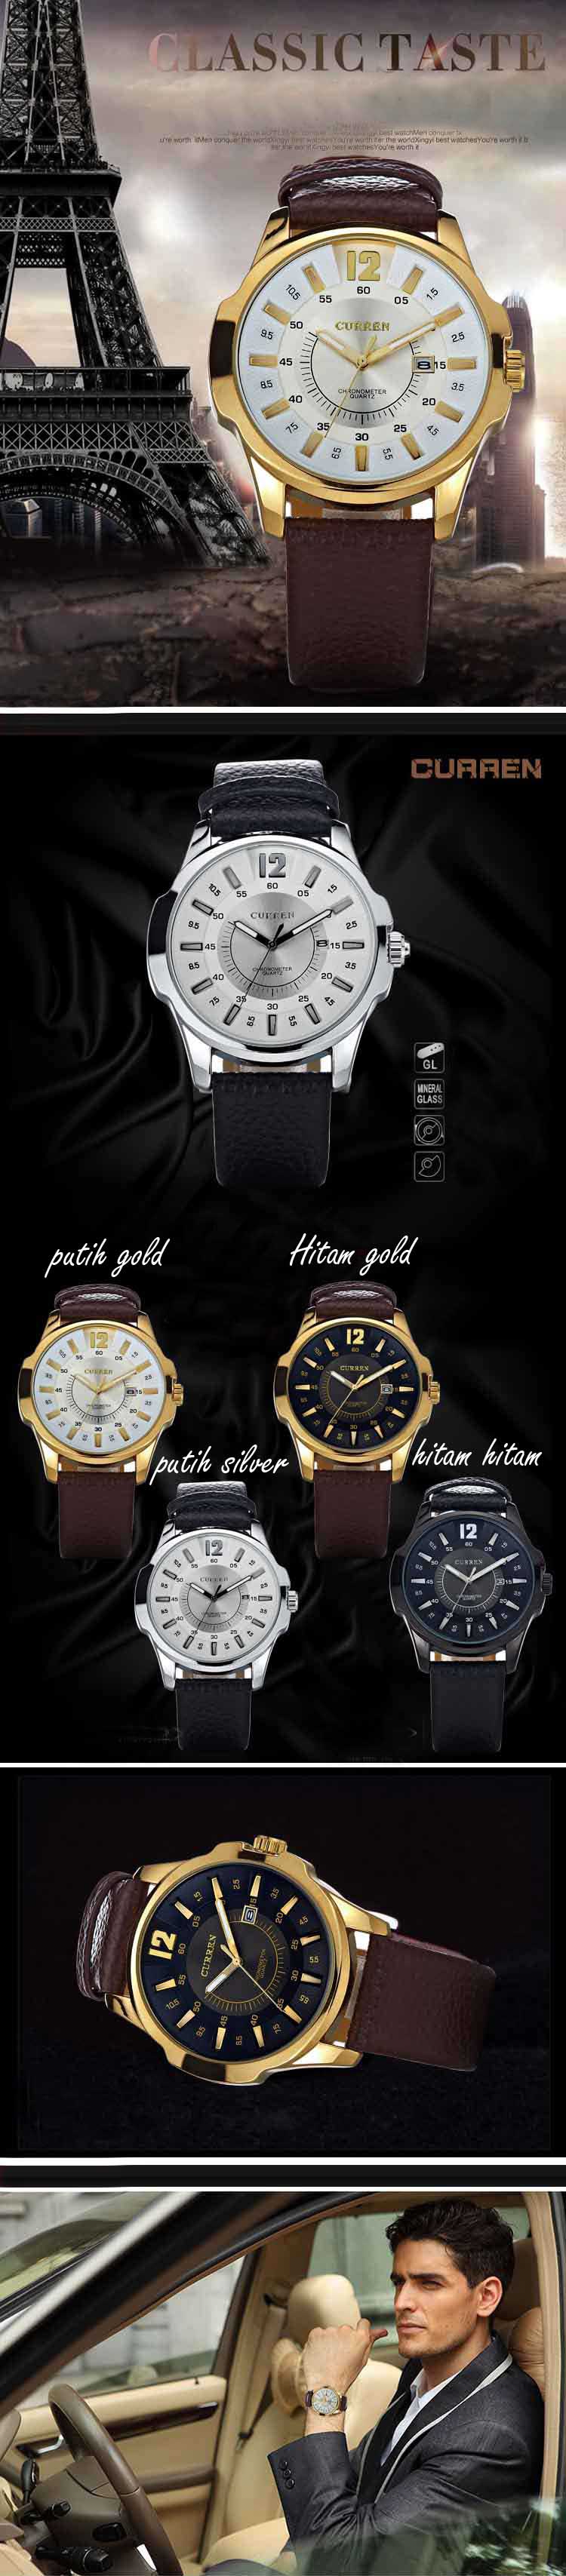 jual jam tangan pria keren online, temukan koleksi terbaru jam tangan pria hanya disini